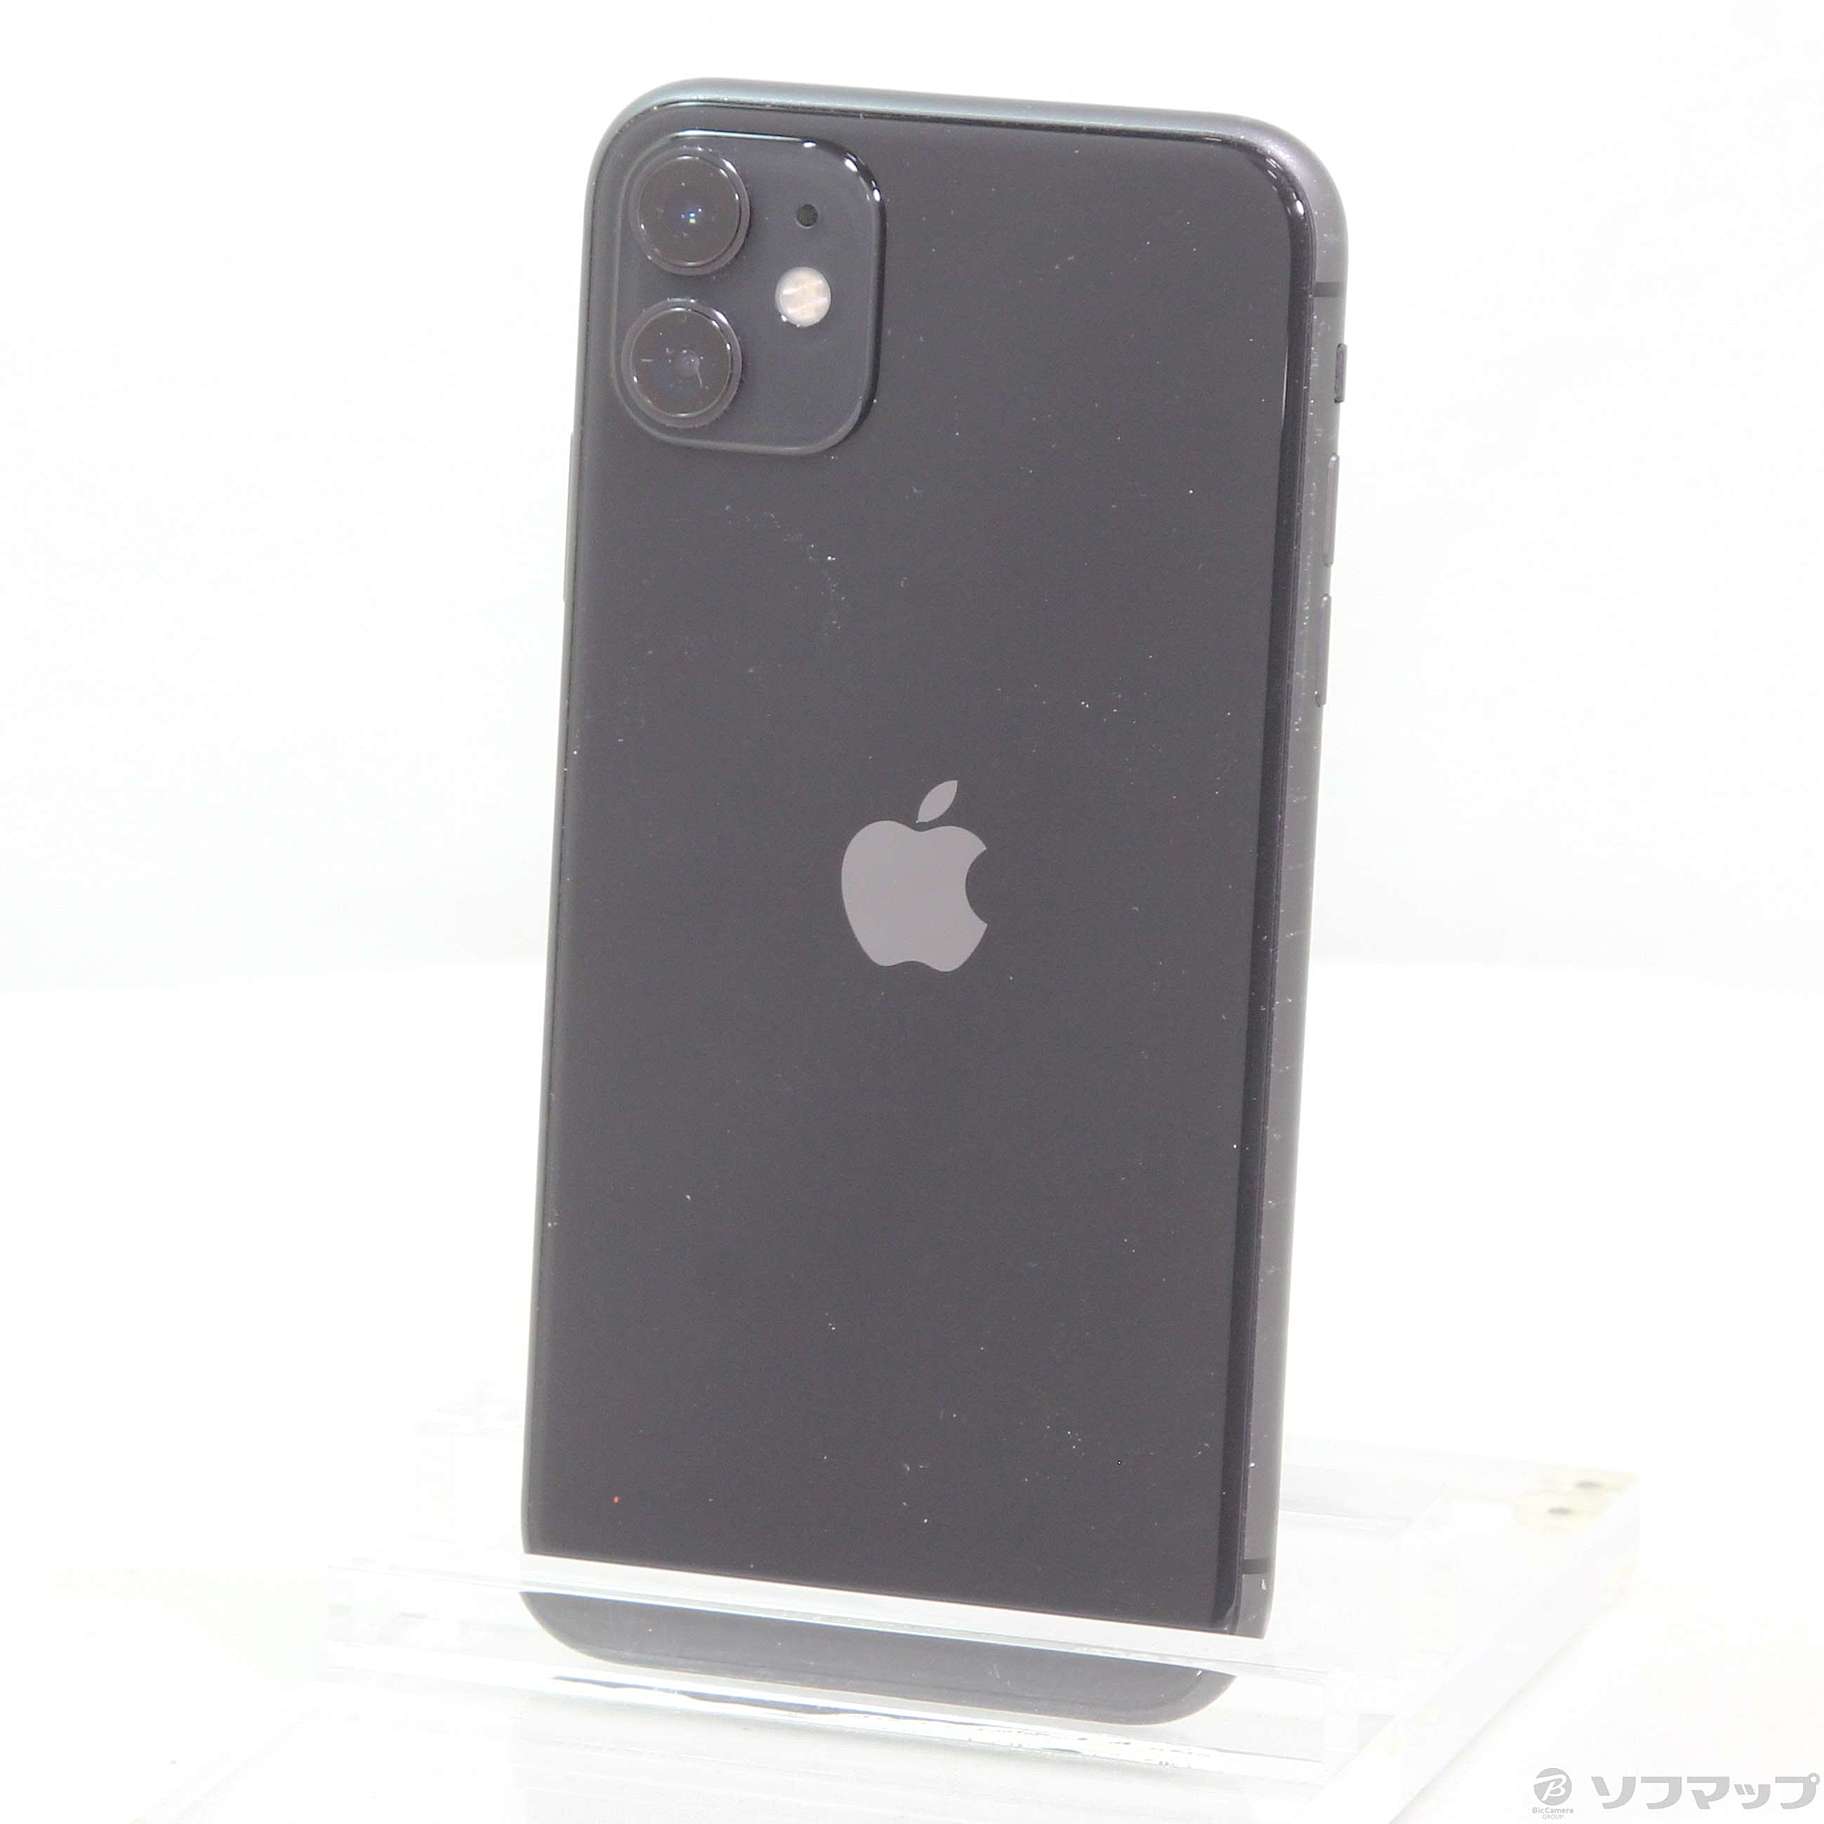 価格販売中 iPhone 11 ブラック 128GB SIMフリー - スマートフォン 